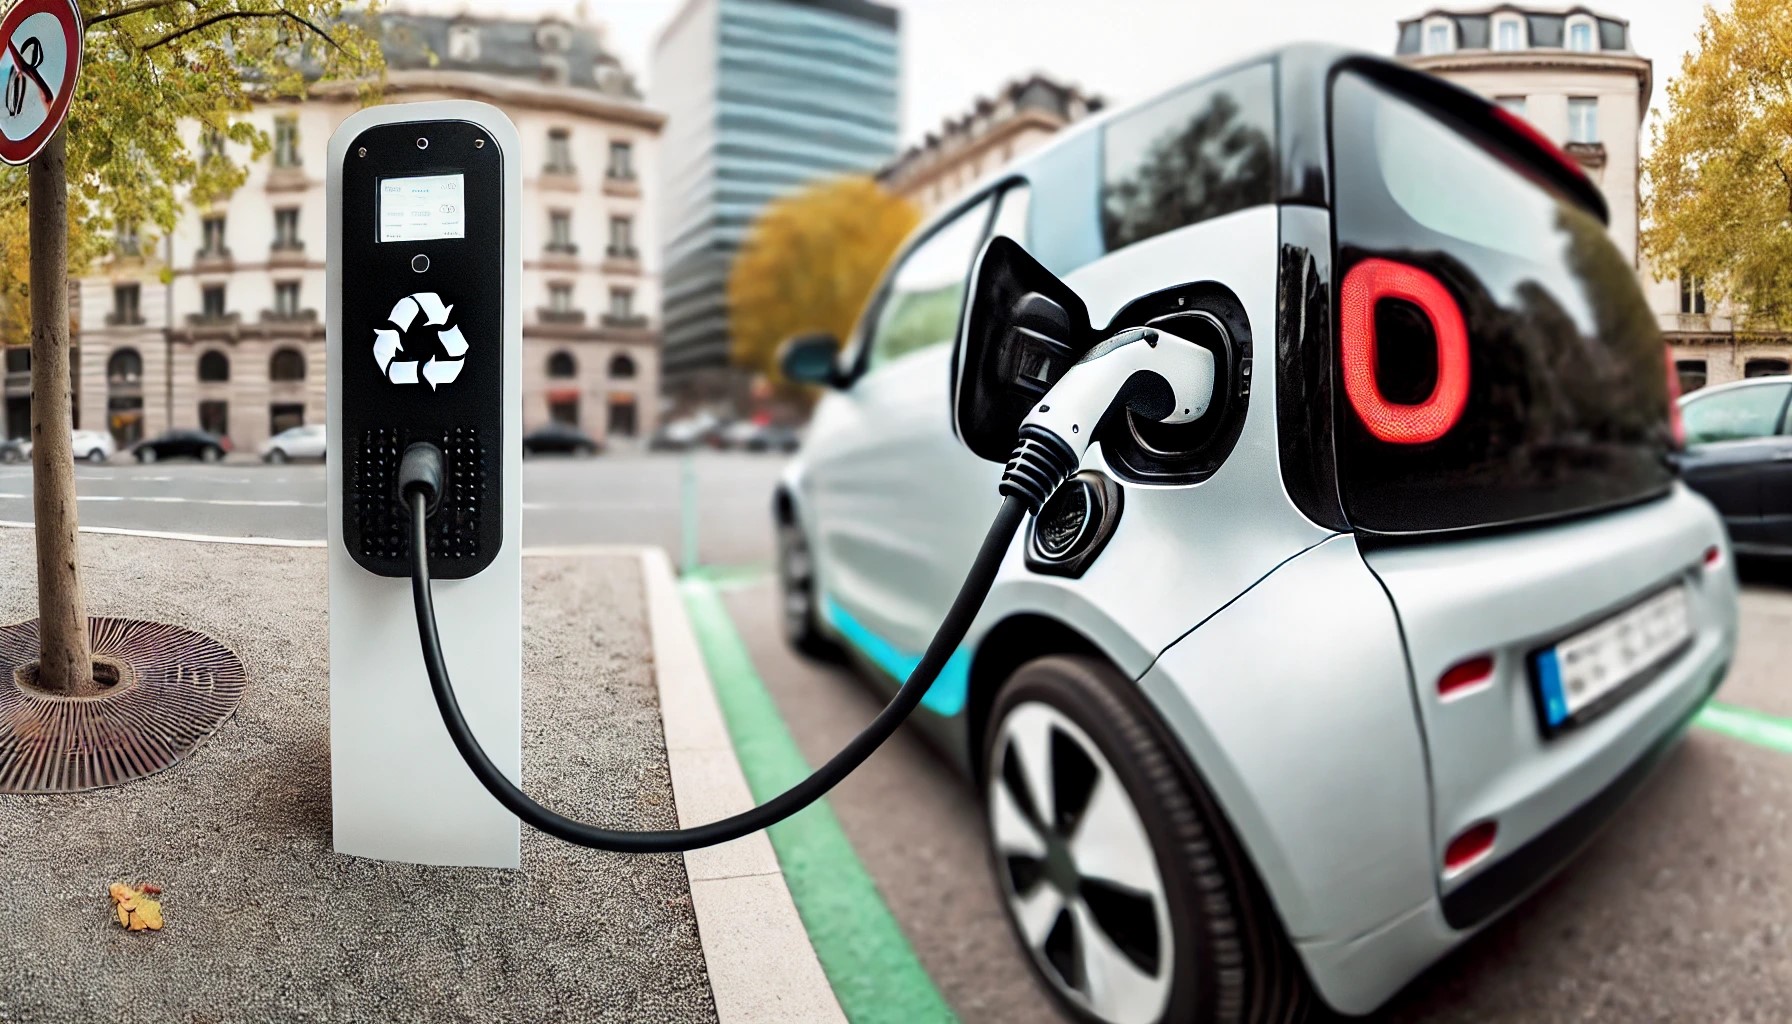 ADAC-Analyse deckt auf: Kleine Elektroautos fast doppelt so teuer wie Verbrenner